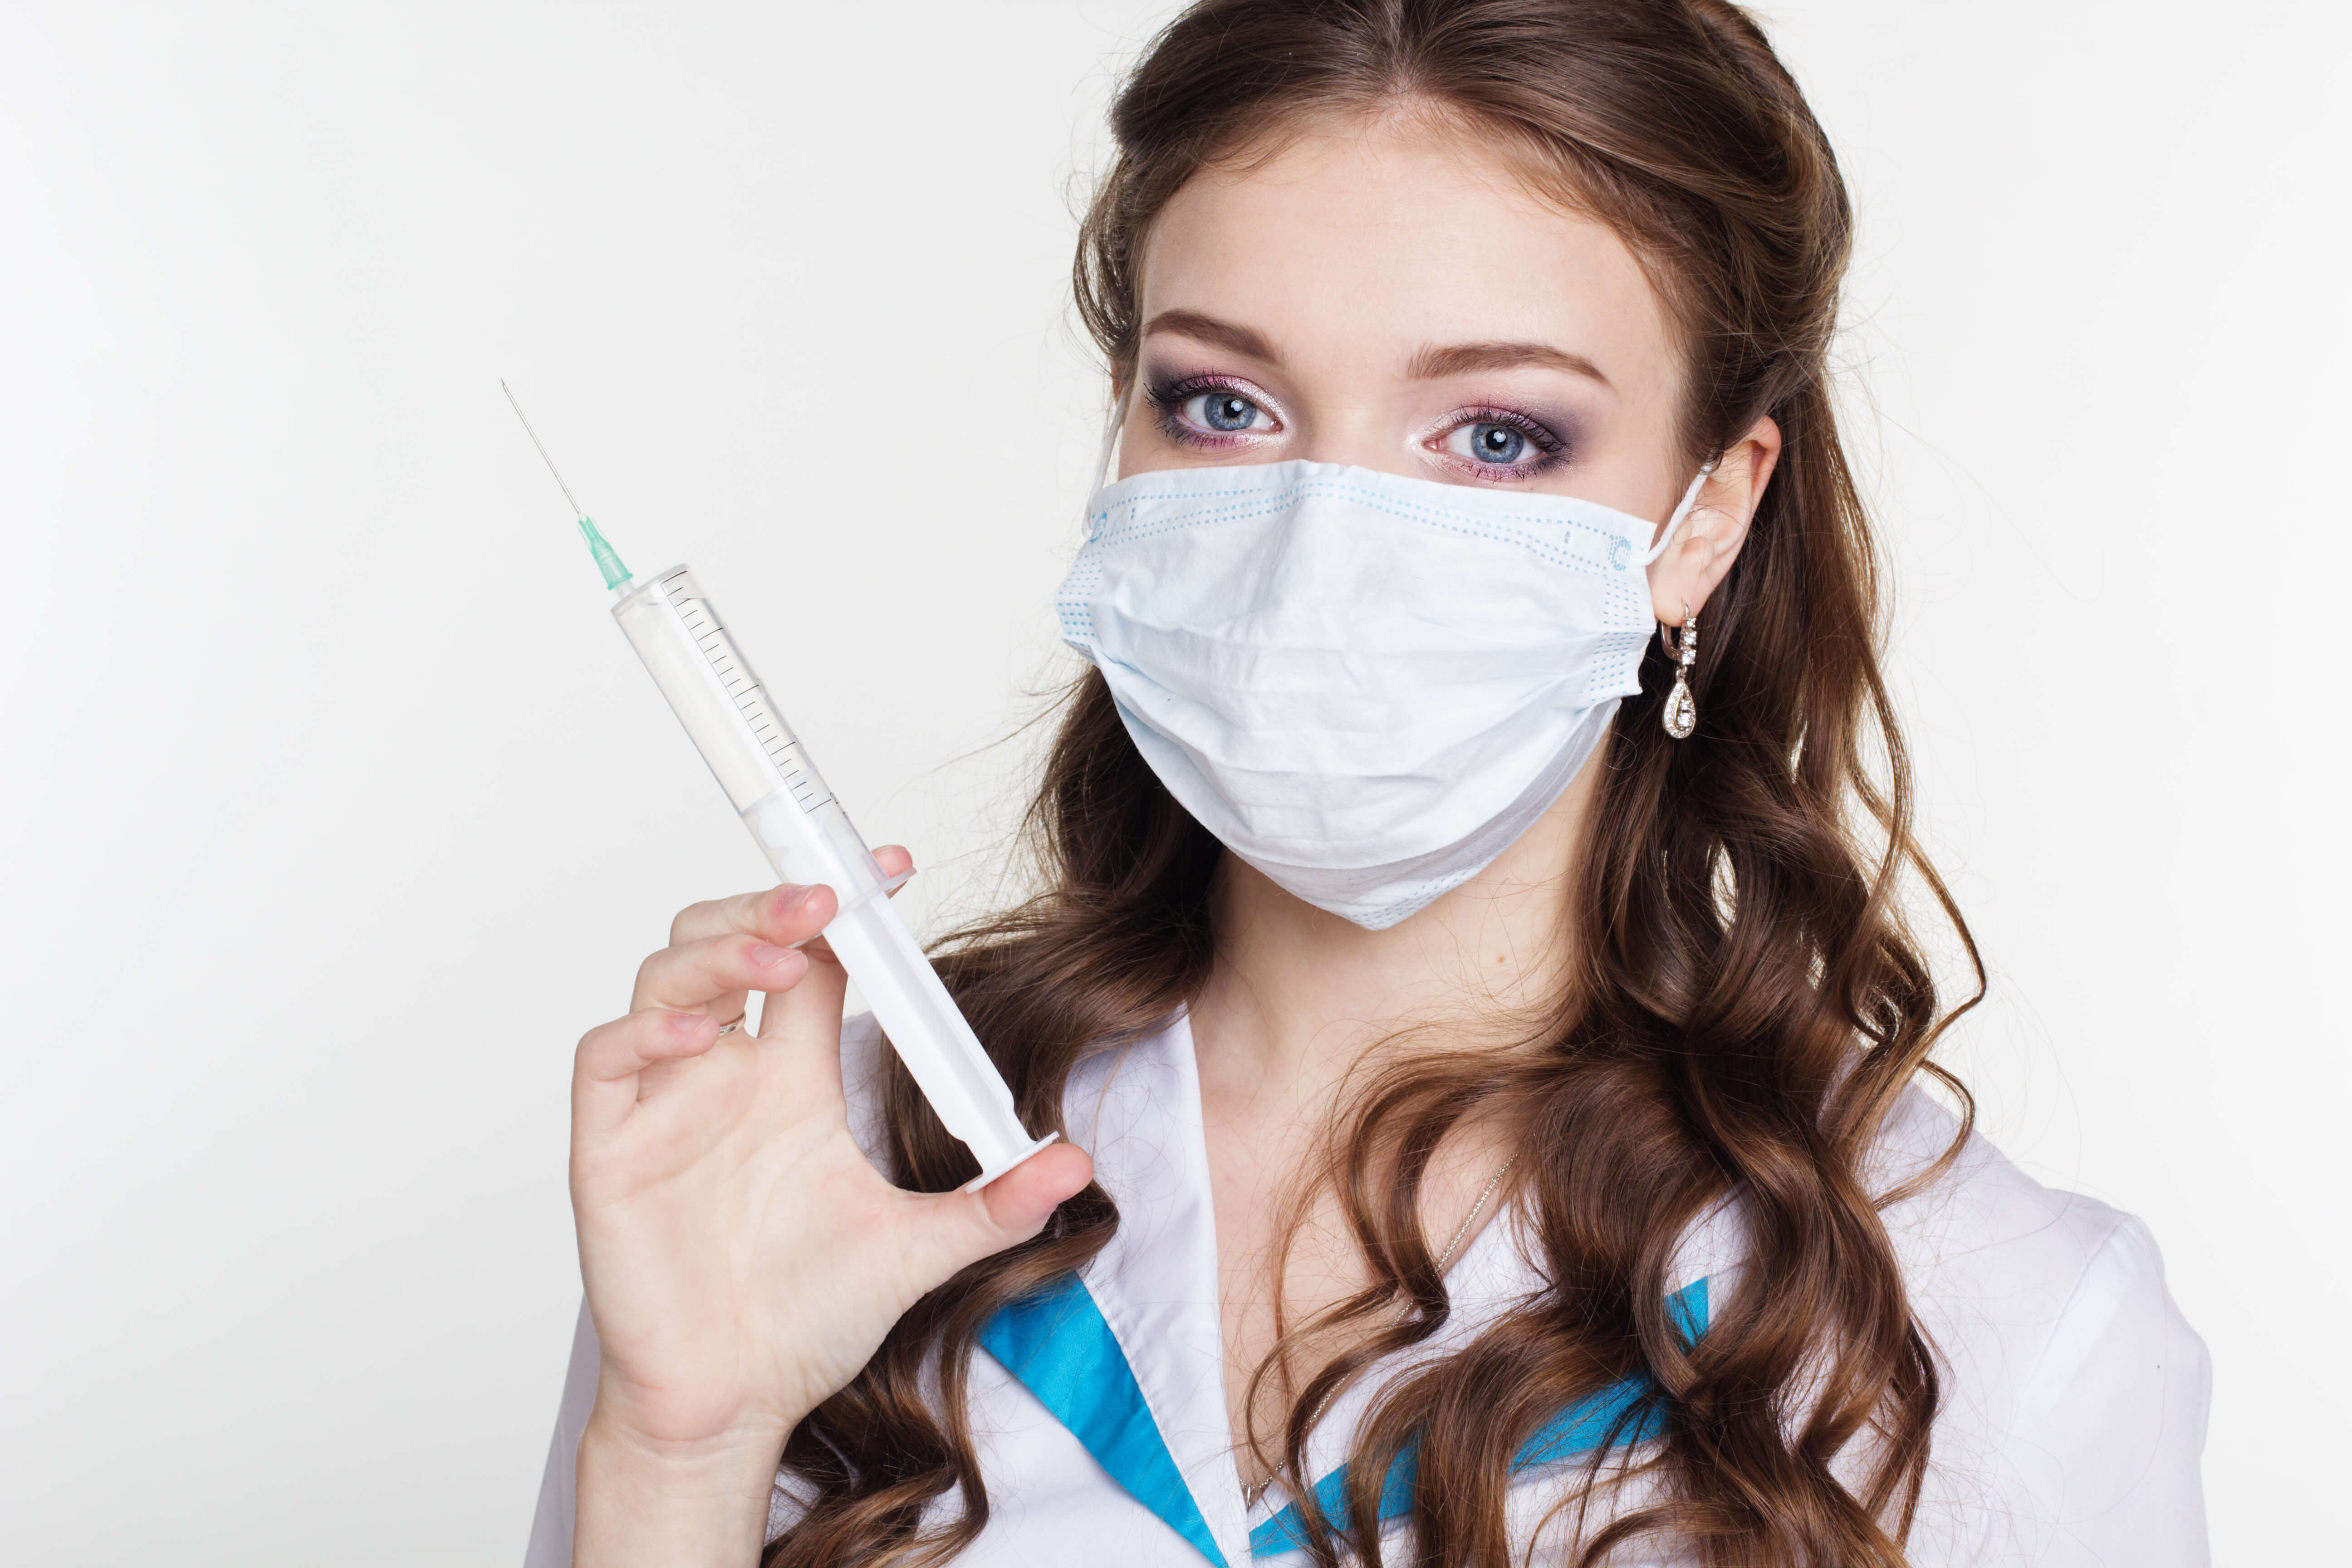 cosmetic injectors attend medical esthetician schools